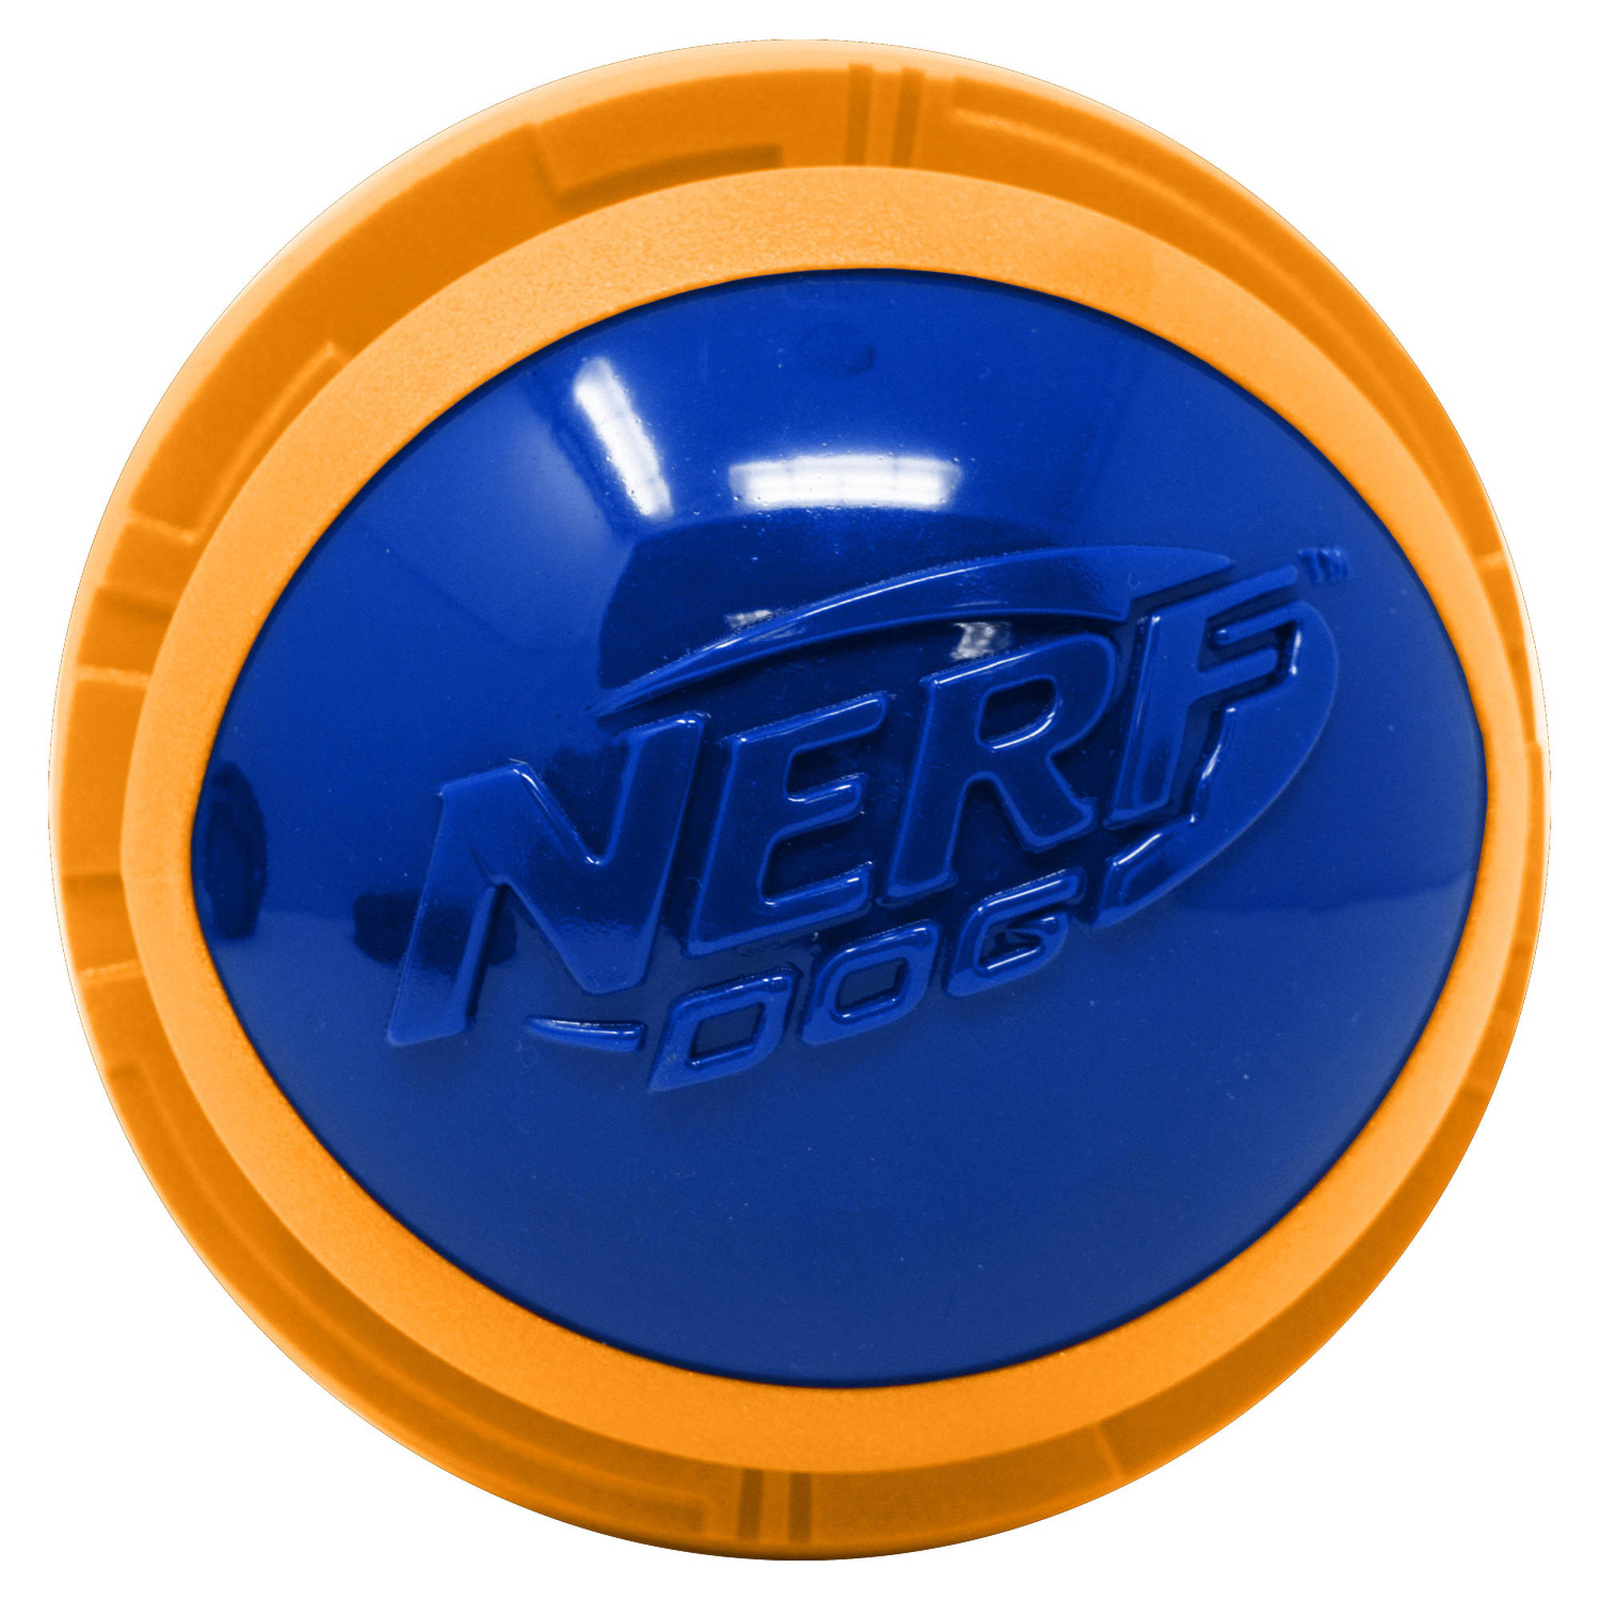 Nerf Nerf мяч из вспененной резины и термопластичной резины, 10 см (серия Мегатон), (синий/оранжевый) (380 г) nerf nerf снаряд из вспененной резины и термопластичной резины 30 см серия мегатон синий зеленый 290 г